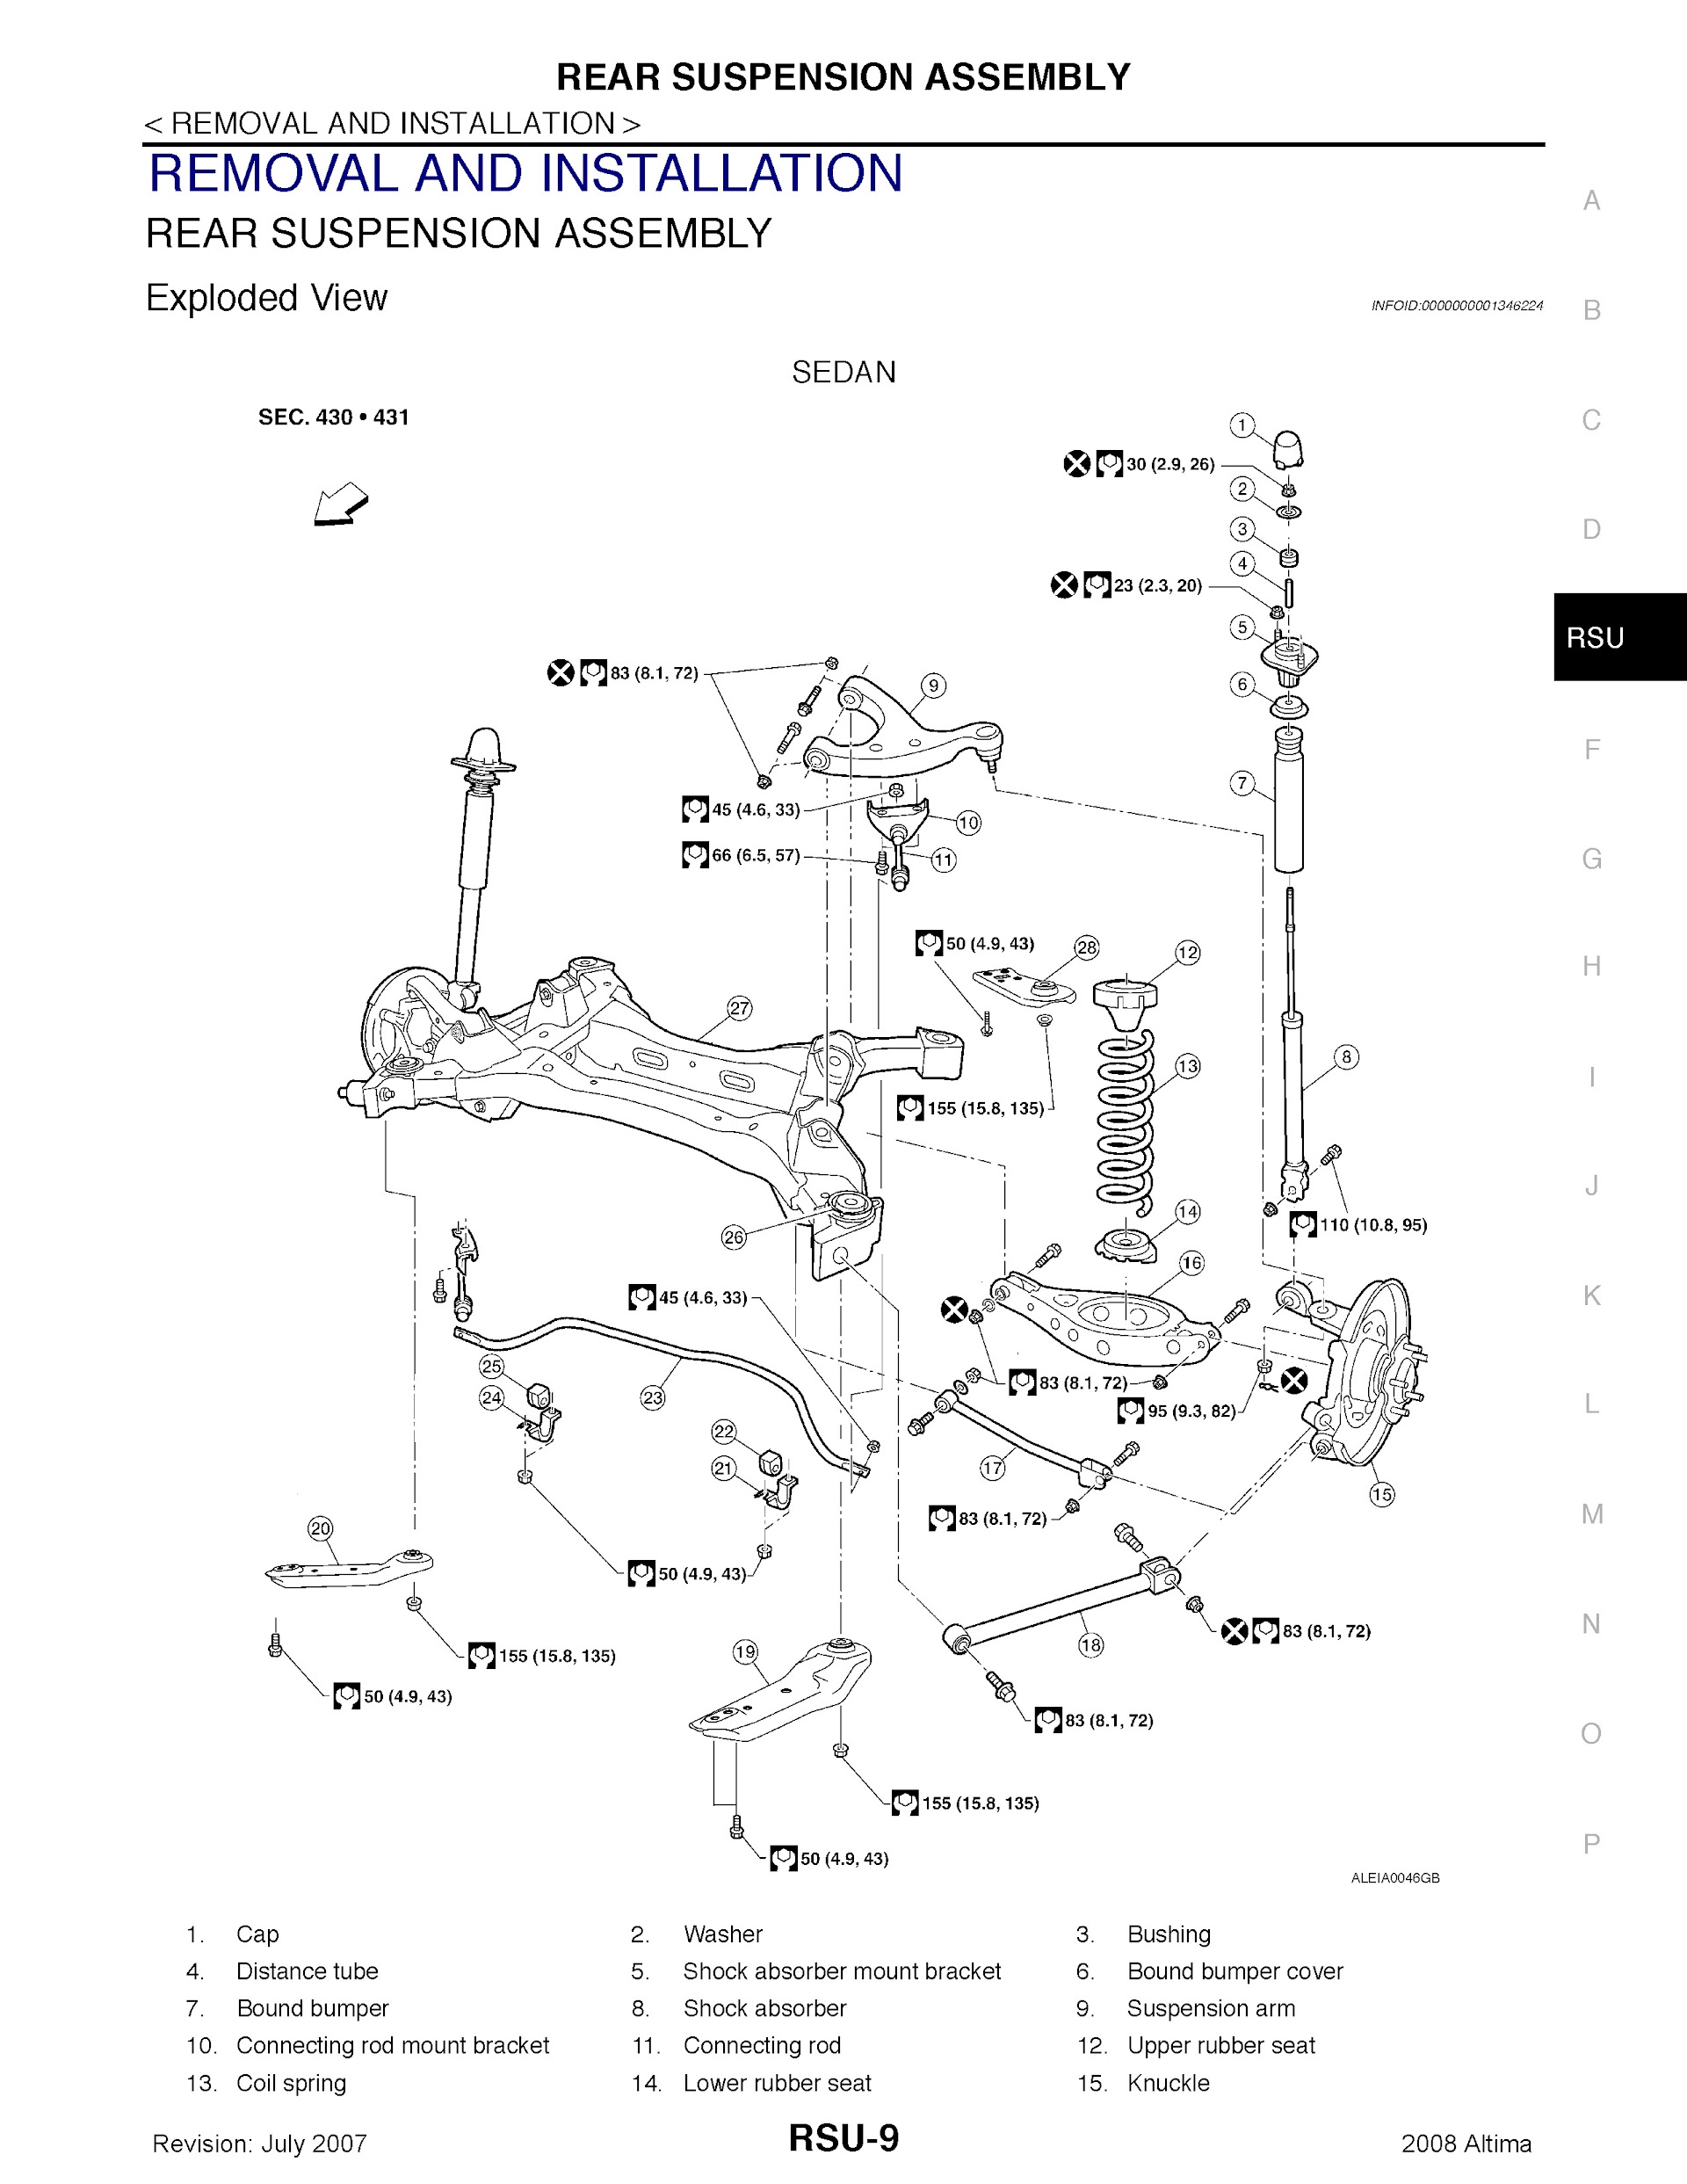 2008 Nissan Altima Repair Manual.